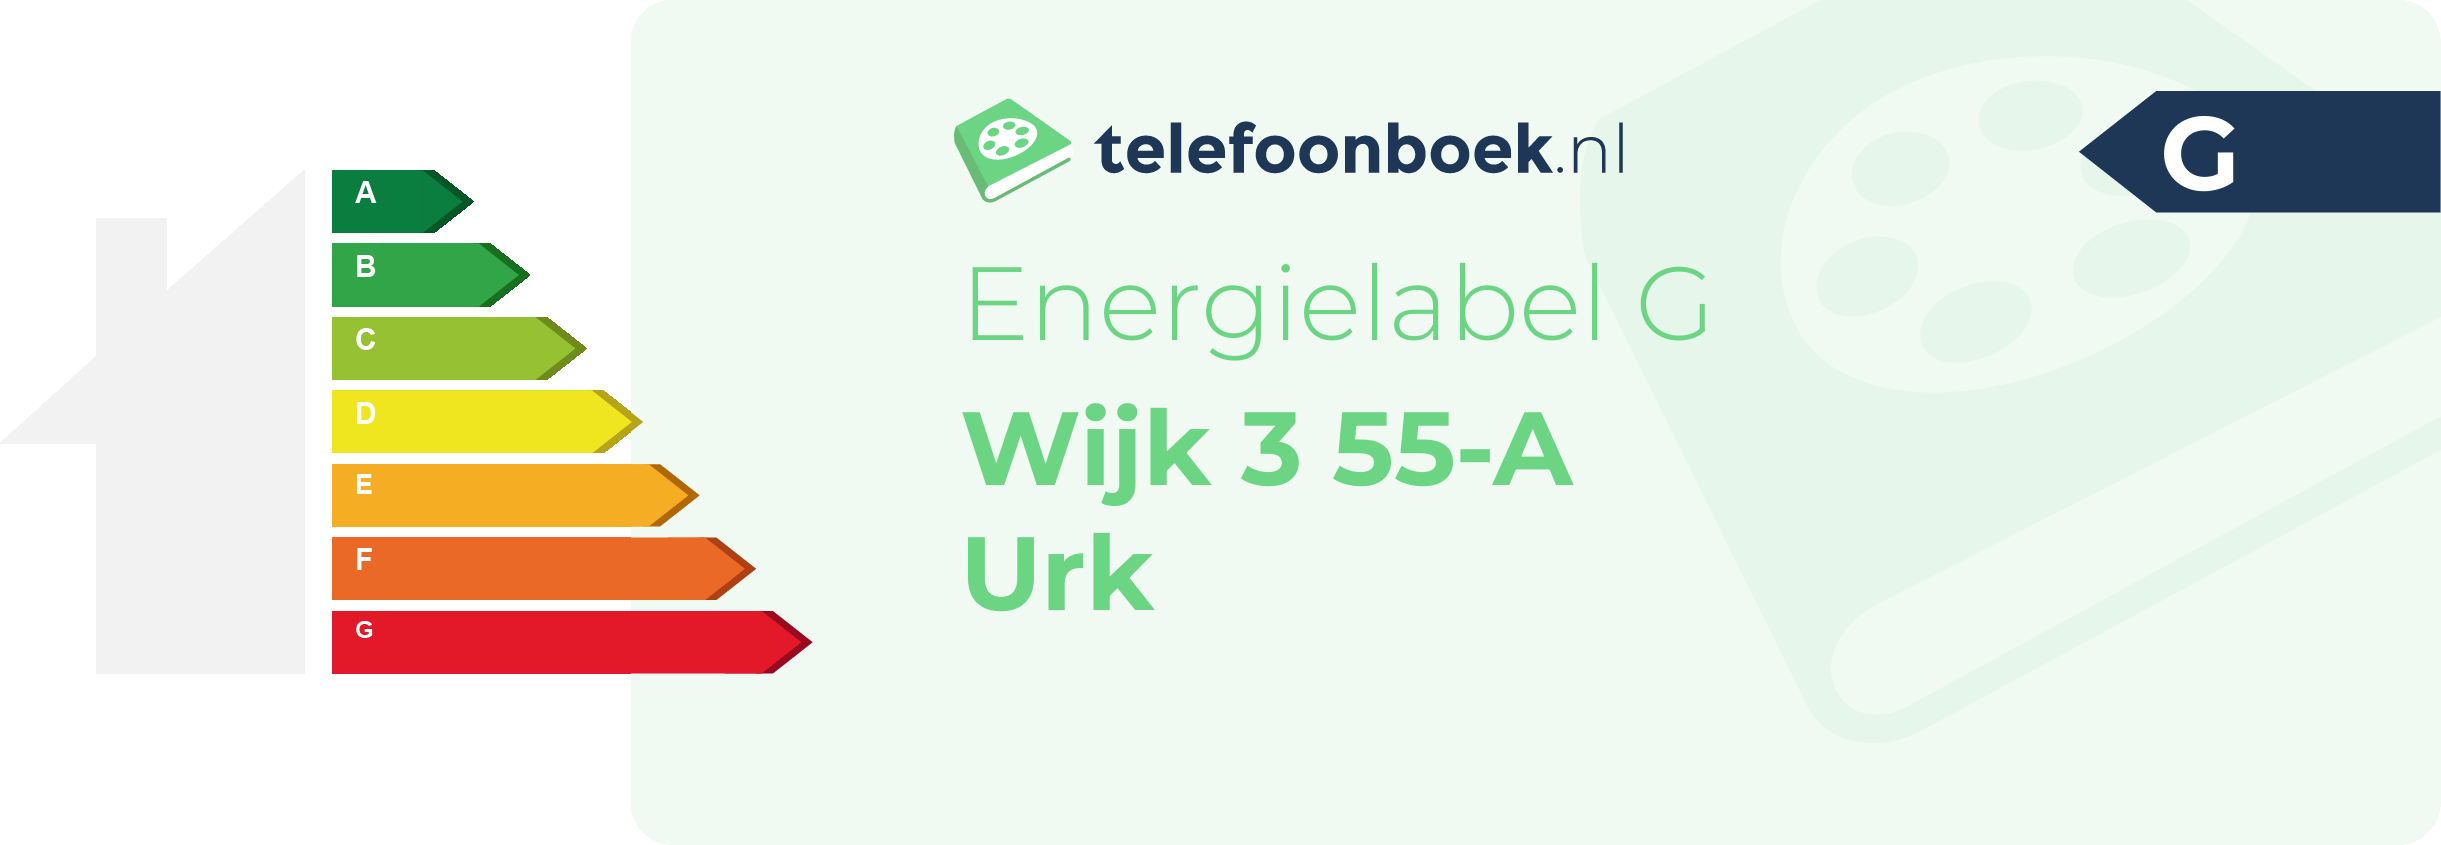 Energielabel Wijk 3 55-A Urk